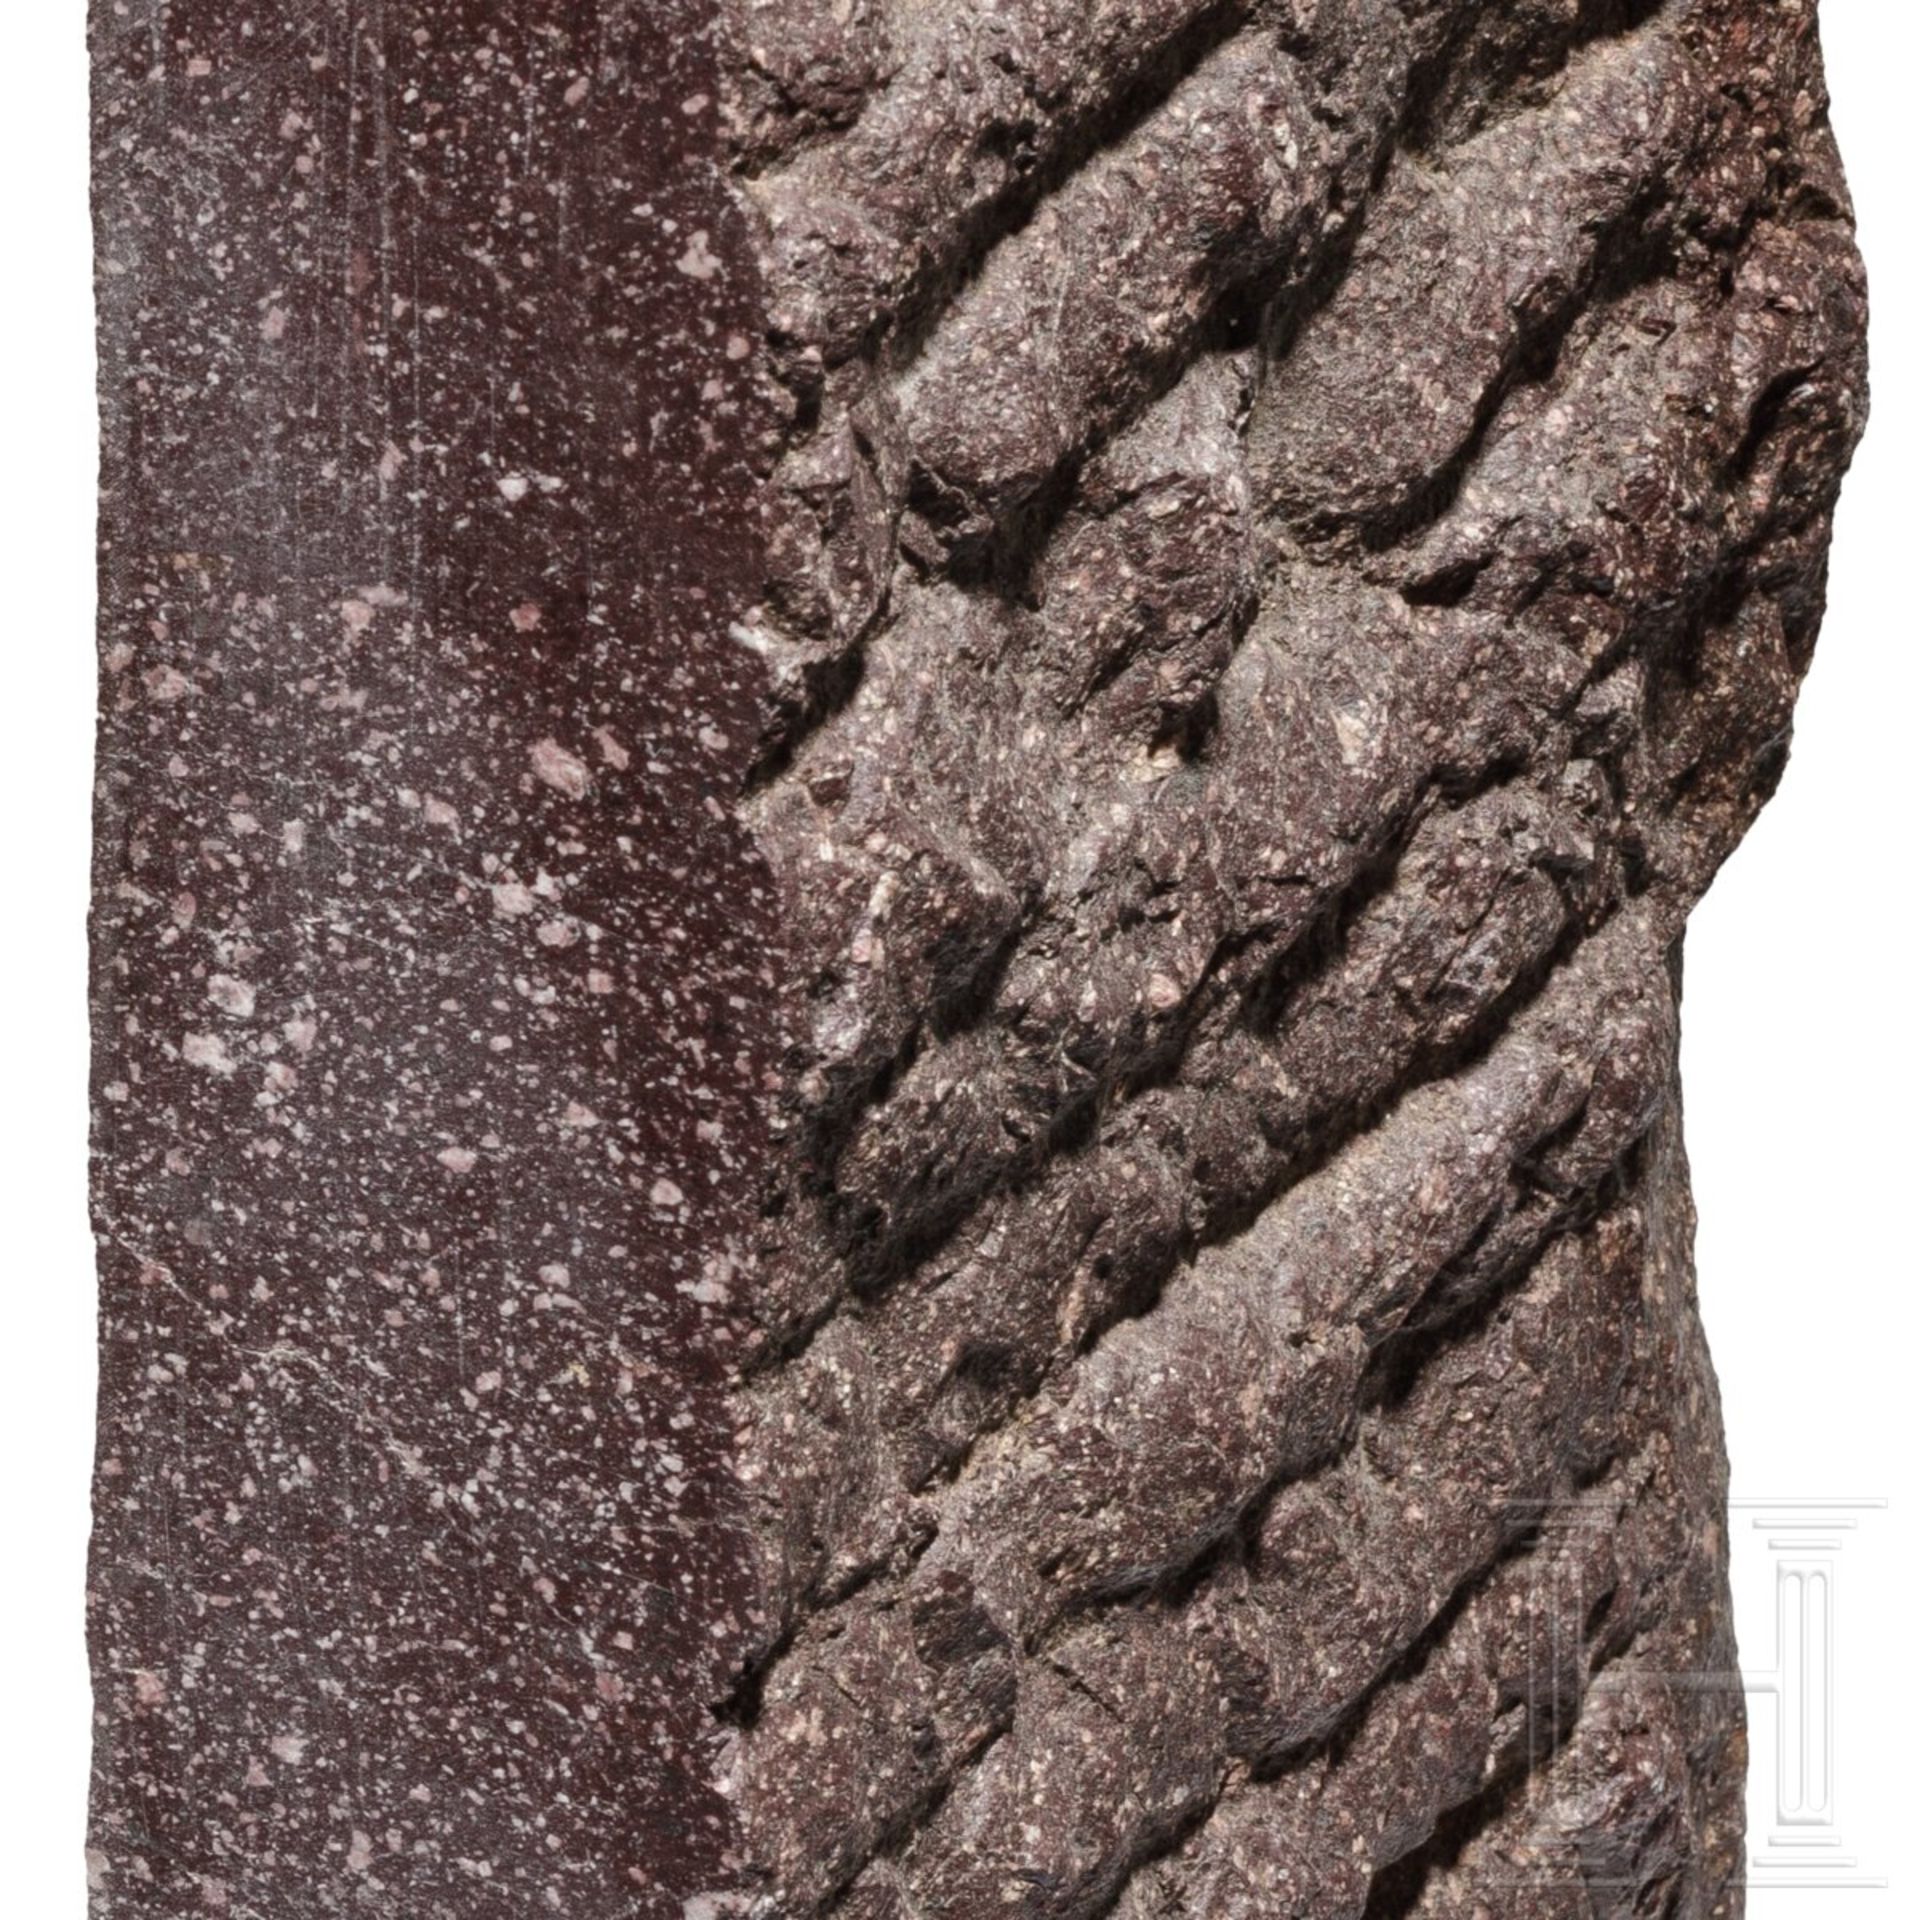 Porphyr-Fragment eines Sockels oder Gebäudes, römisch, 1. - 3. Jhdt. - Image 5 of 5